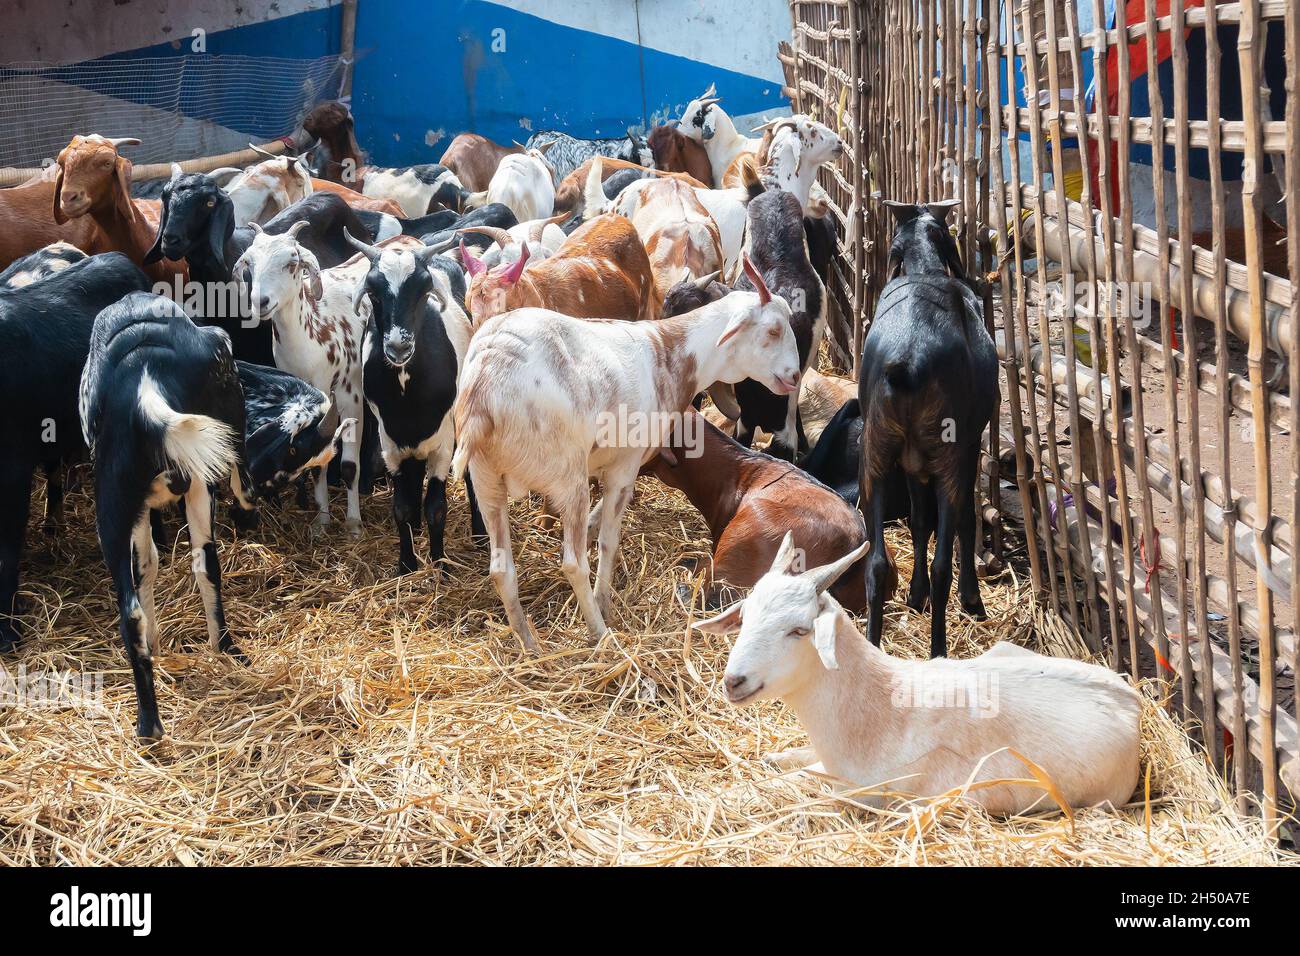 Kolkata, Bengale-Occidental, Inde - 11th août 2019 : les chèvres sont vendues sur le marché pendant 'Eid al-Adha' ou 'Fête du sacrifice' ou Eid Qurban. Banque D'Images